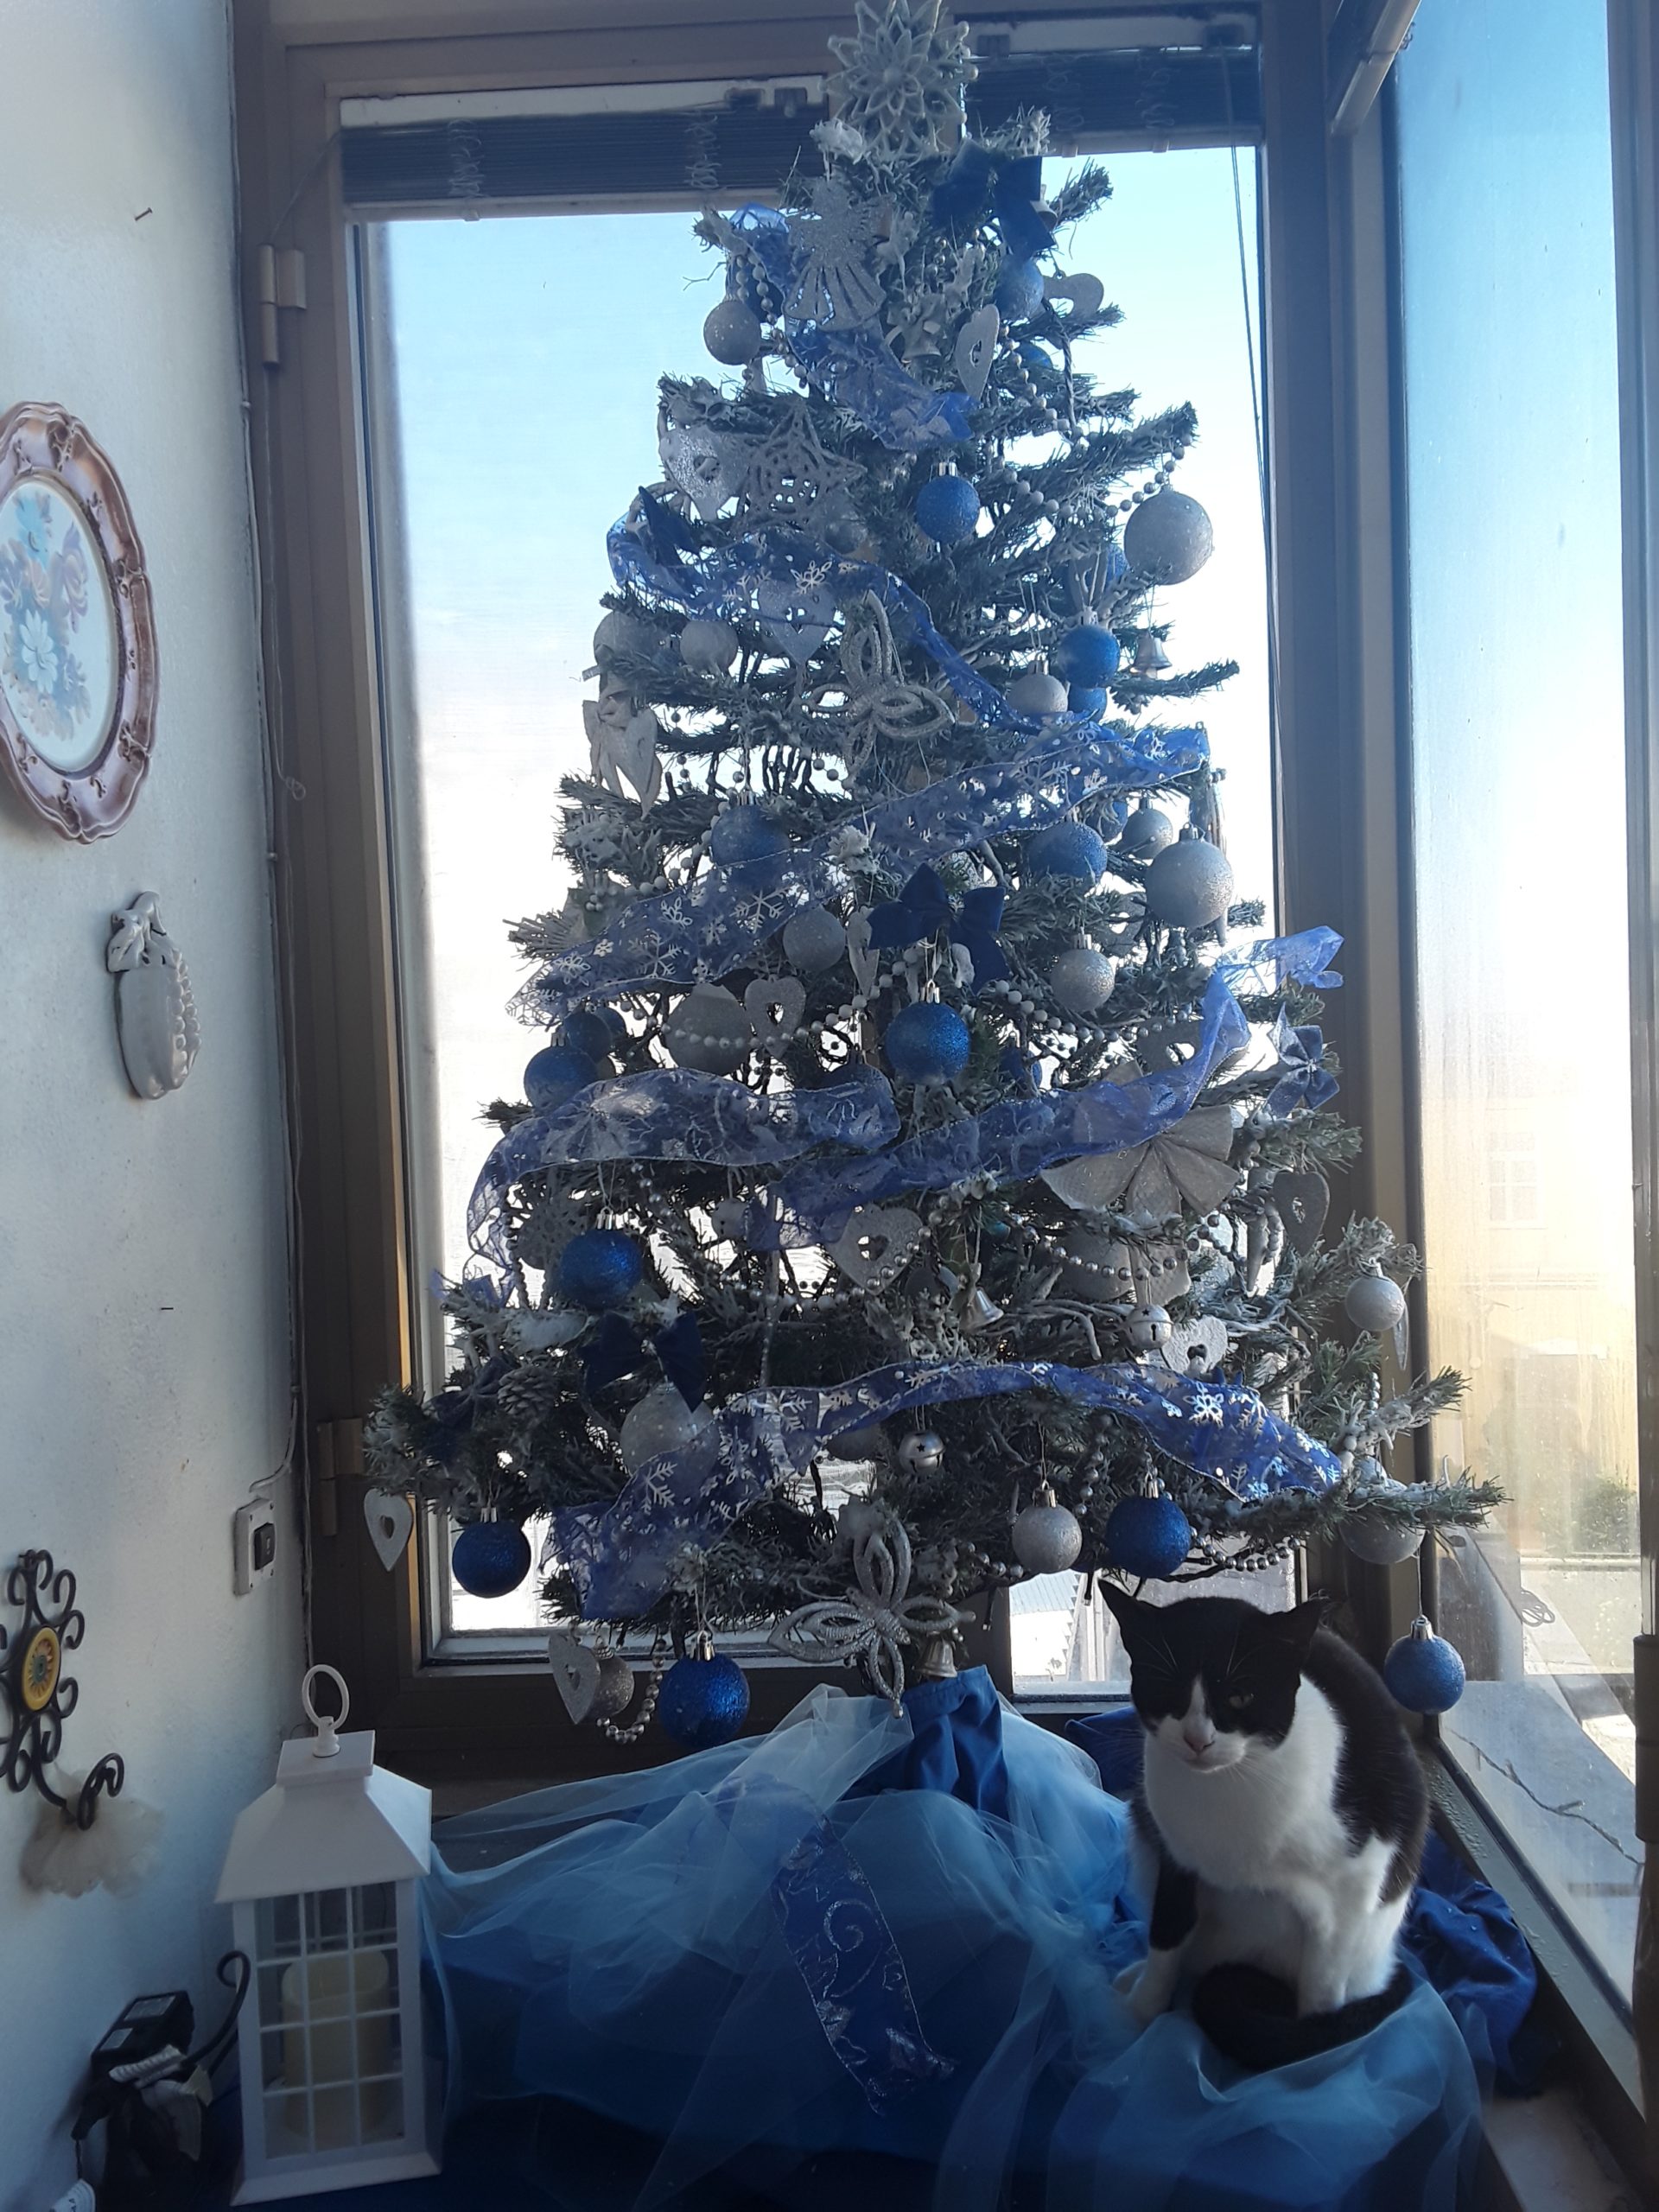 A Pippa piace tanto l' albero di Natale.....